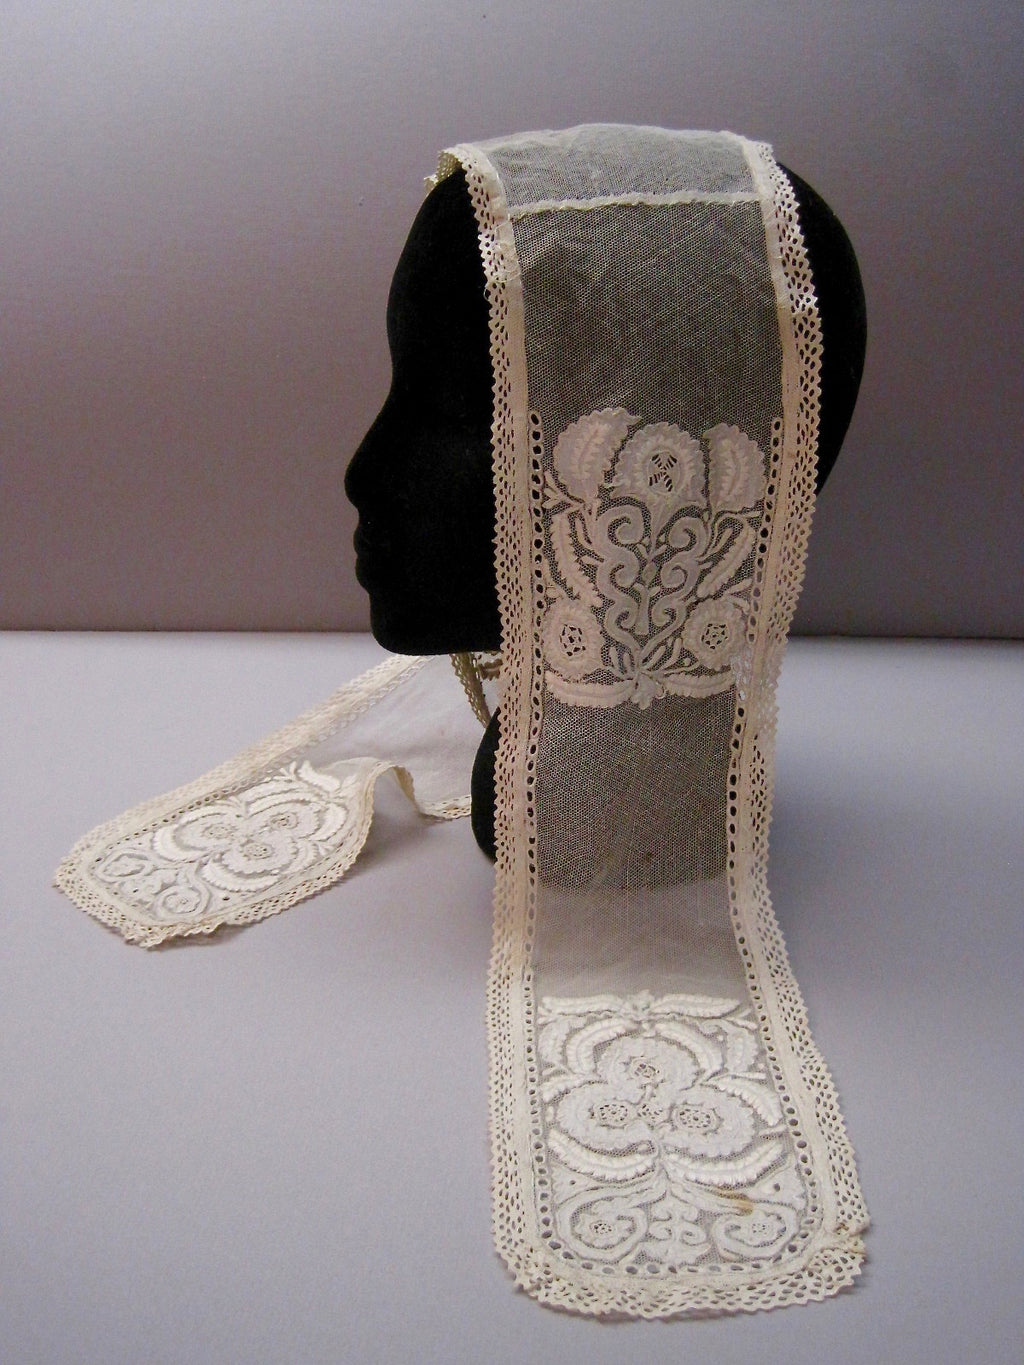 Antique Victorian 1860s Civil war era Ayrshire lace lappet cap